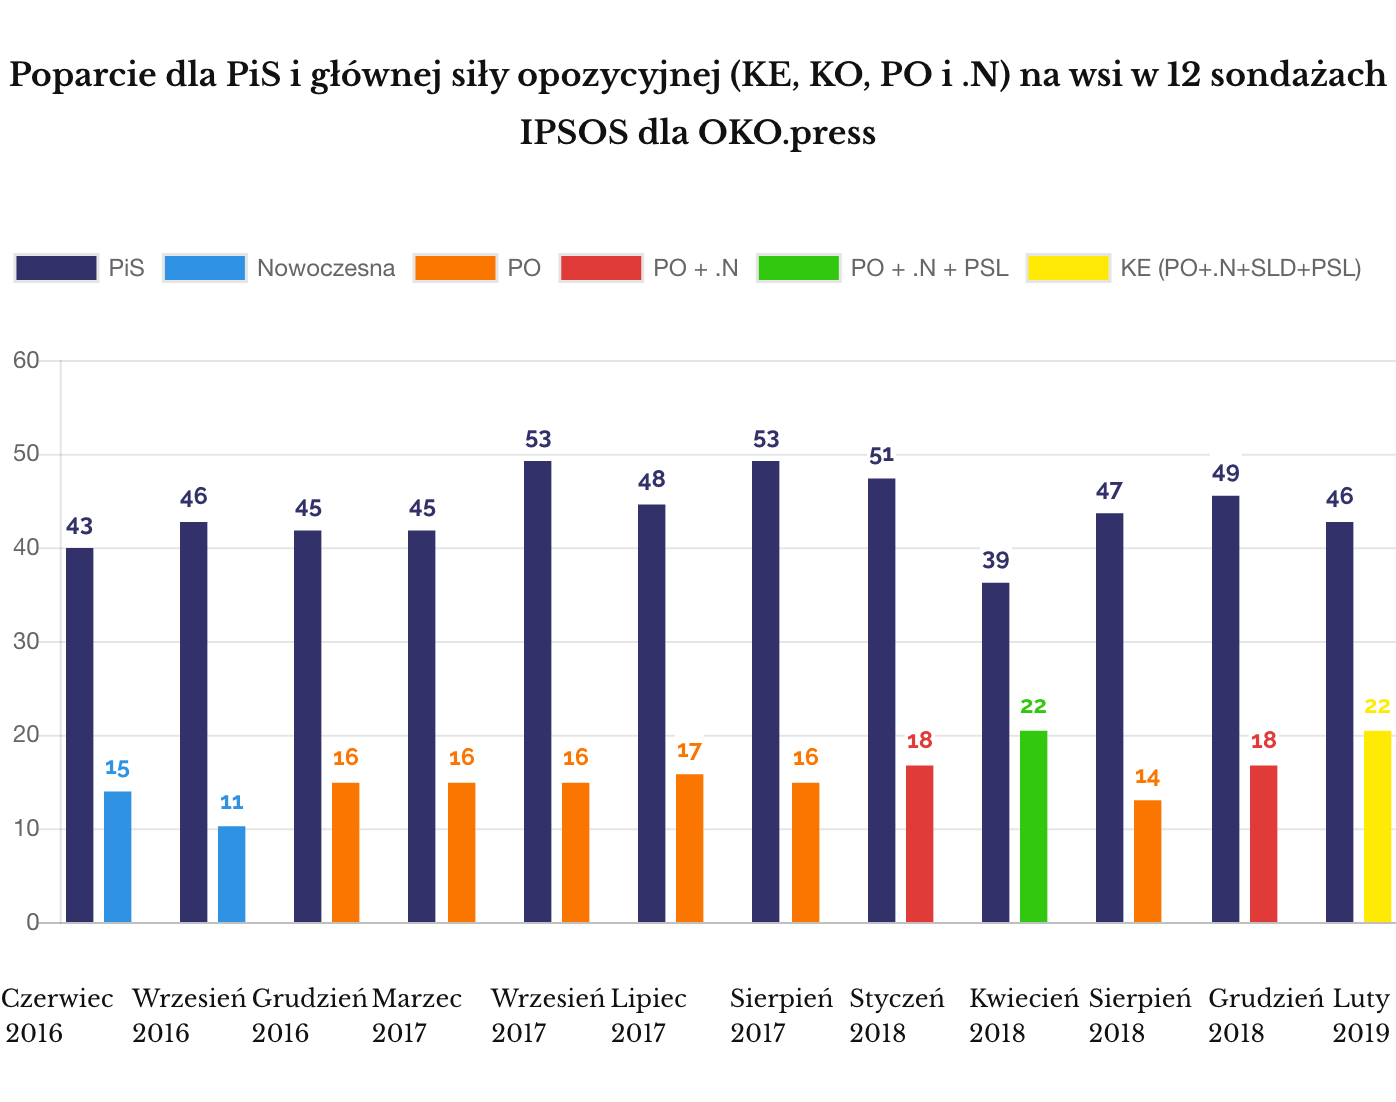 IPSOS - poparcie dla PiS i najsilniejszej opozycji na wsi